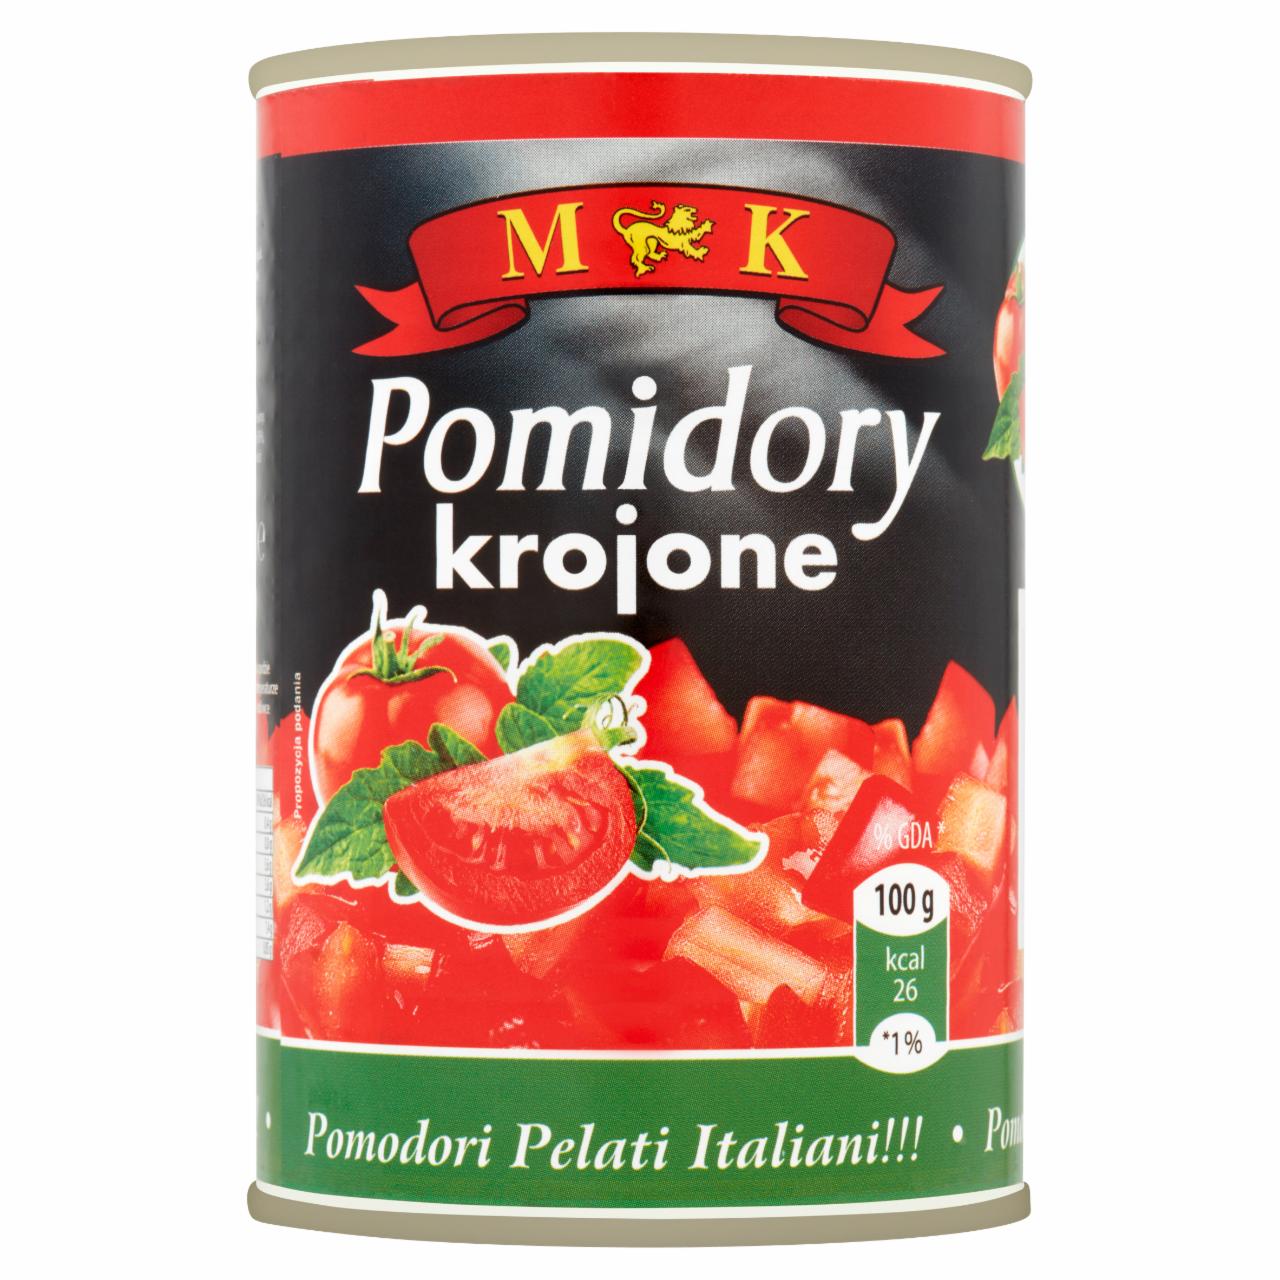 Zdjęcia - Pomidory krojone MK